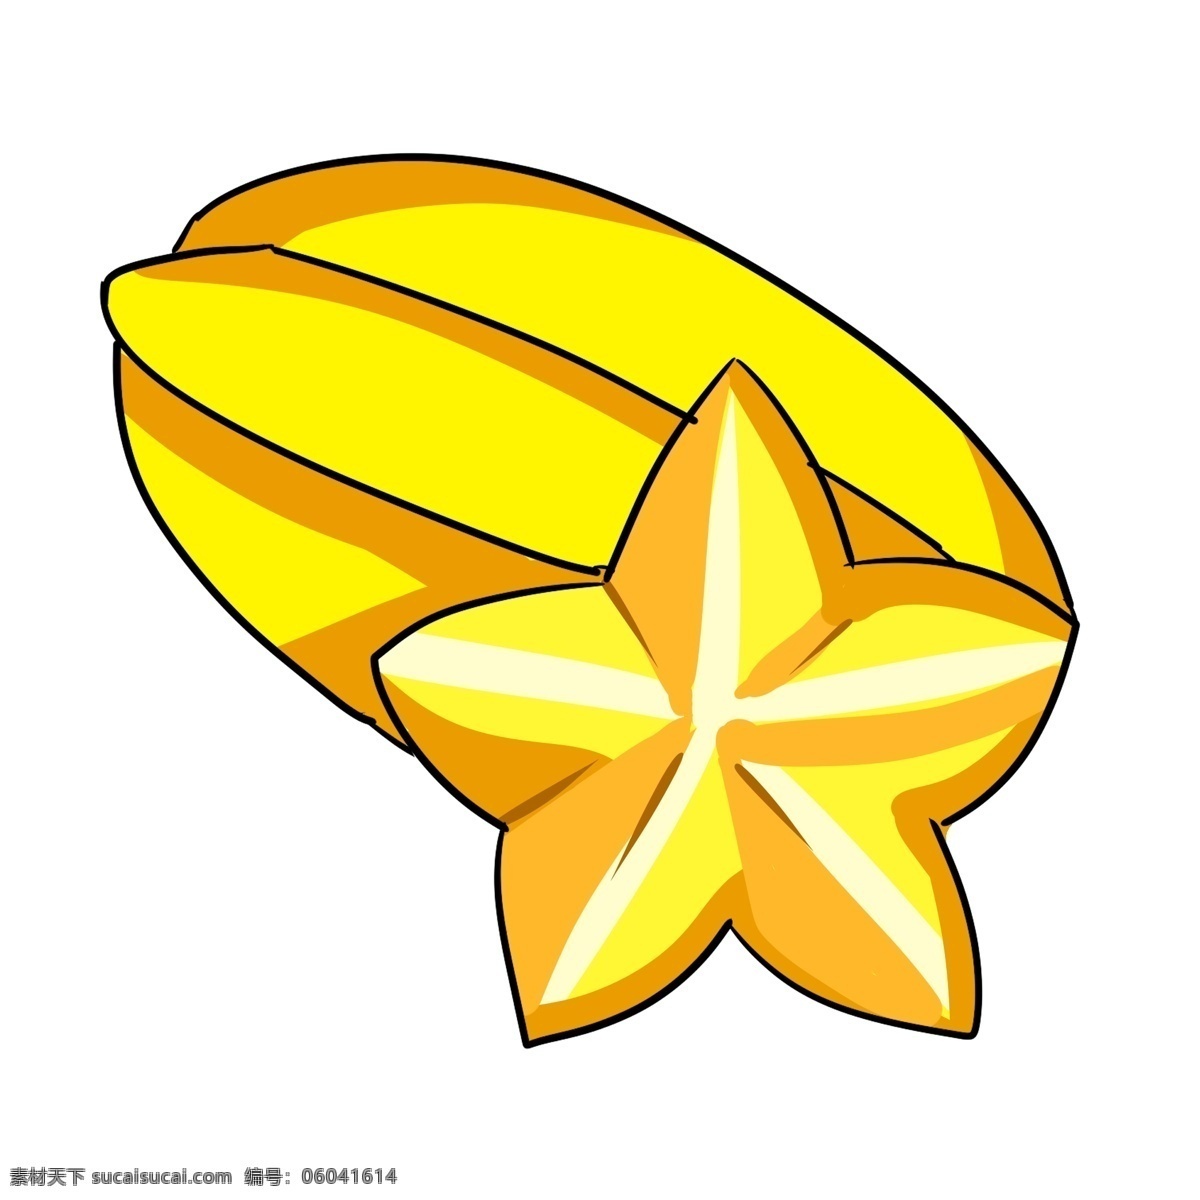 黄色 圆弧 杨桃 食物 元素 美食 吃的 光泽 水果 纹理 五角星 卡通 插画 高光